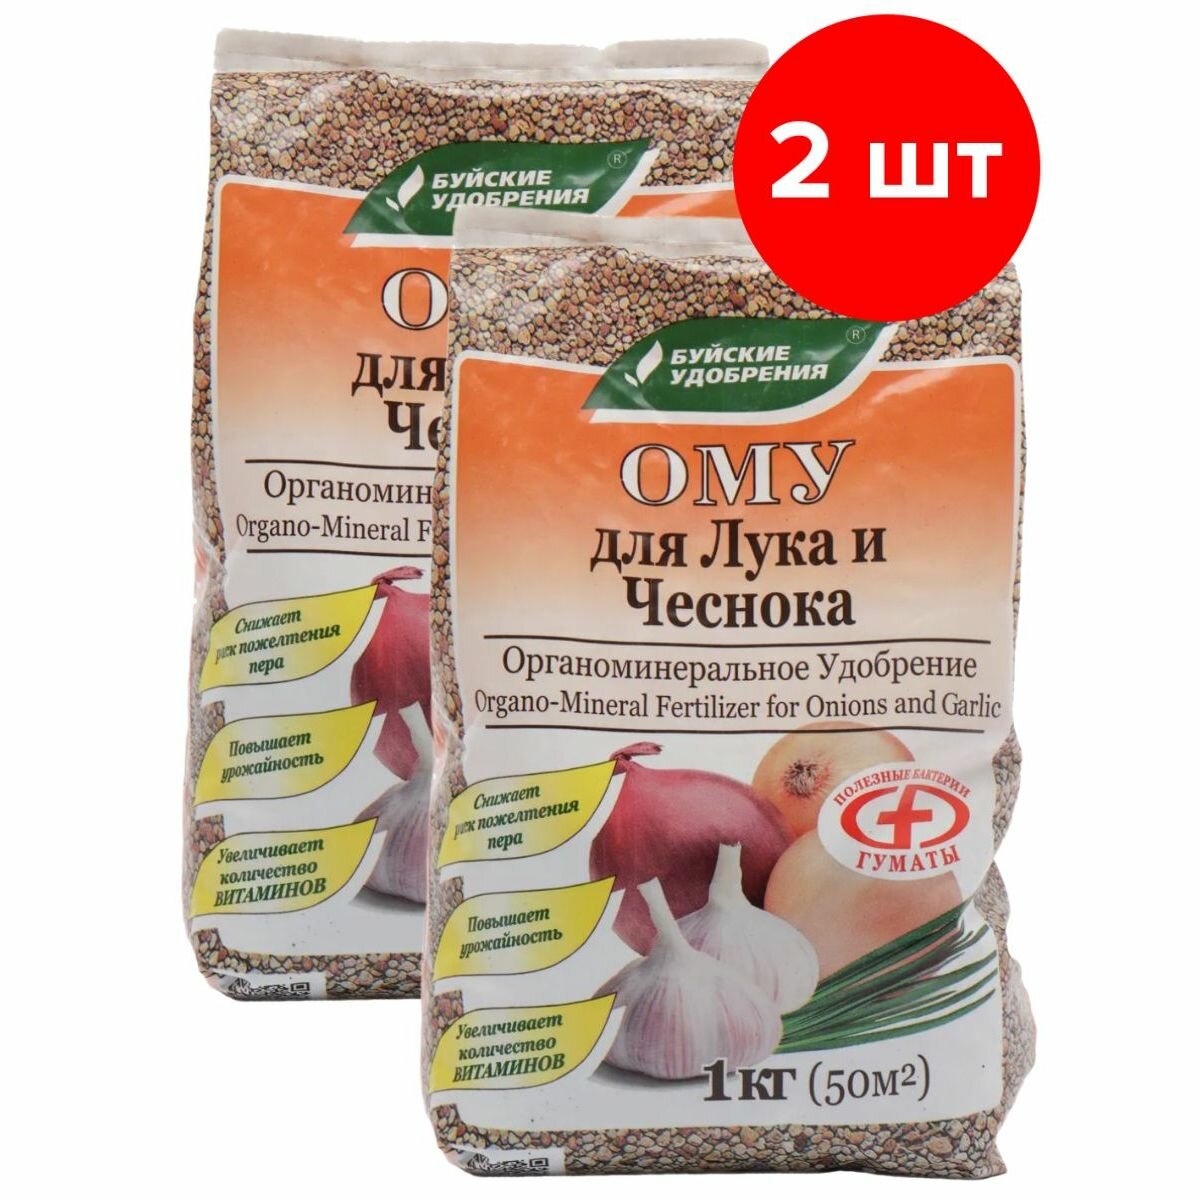 Органоминеральное удобрение Буйские удобрения Для лука, чеснока, 2шт по 1кг (2 кг)